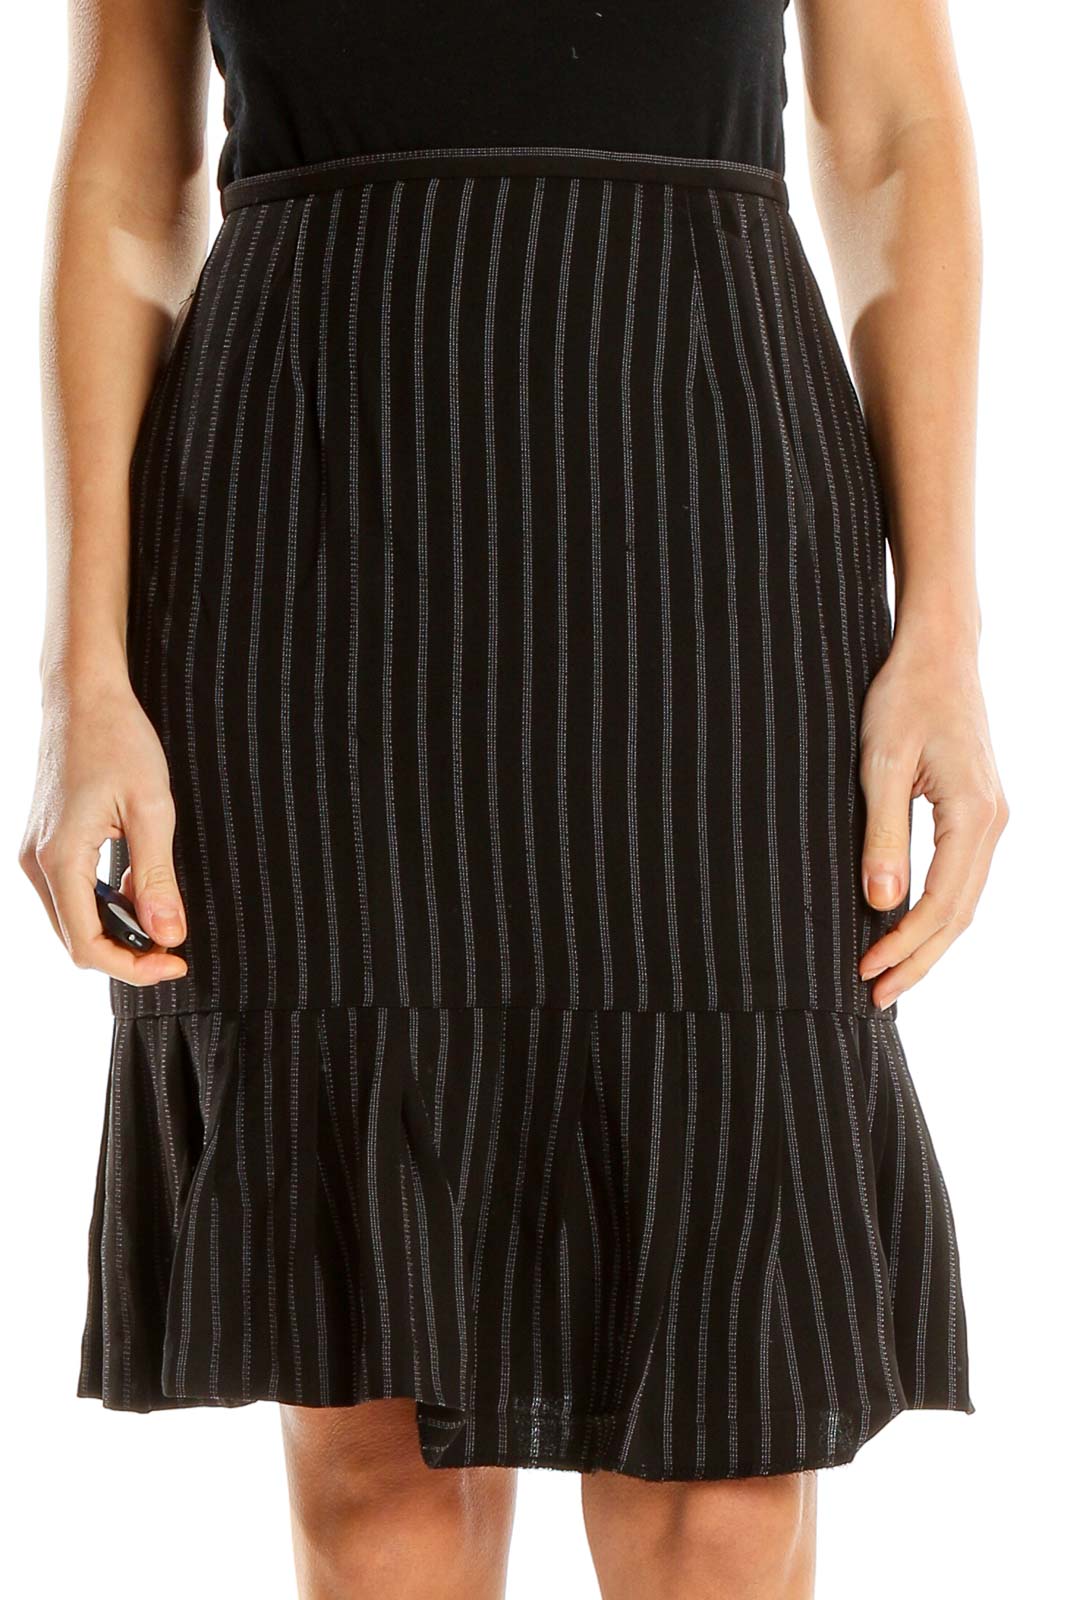 Black Non-denim Skirt Front